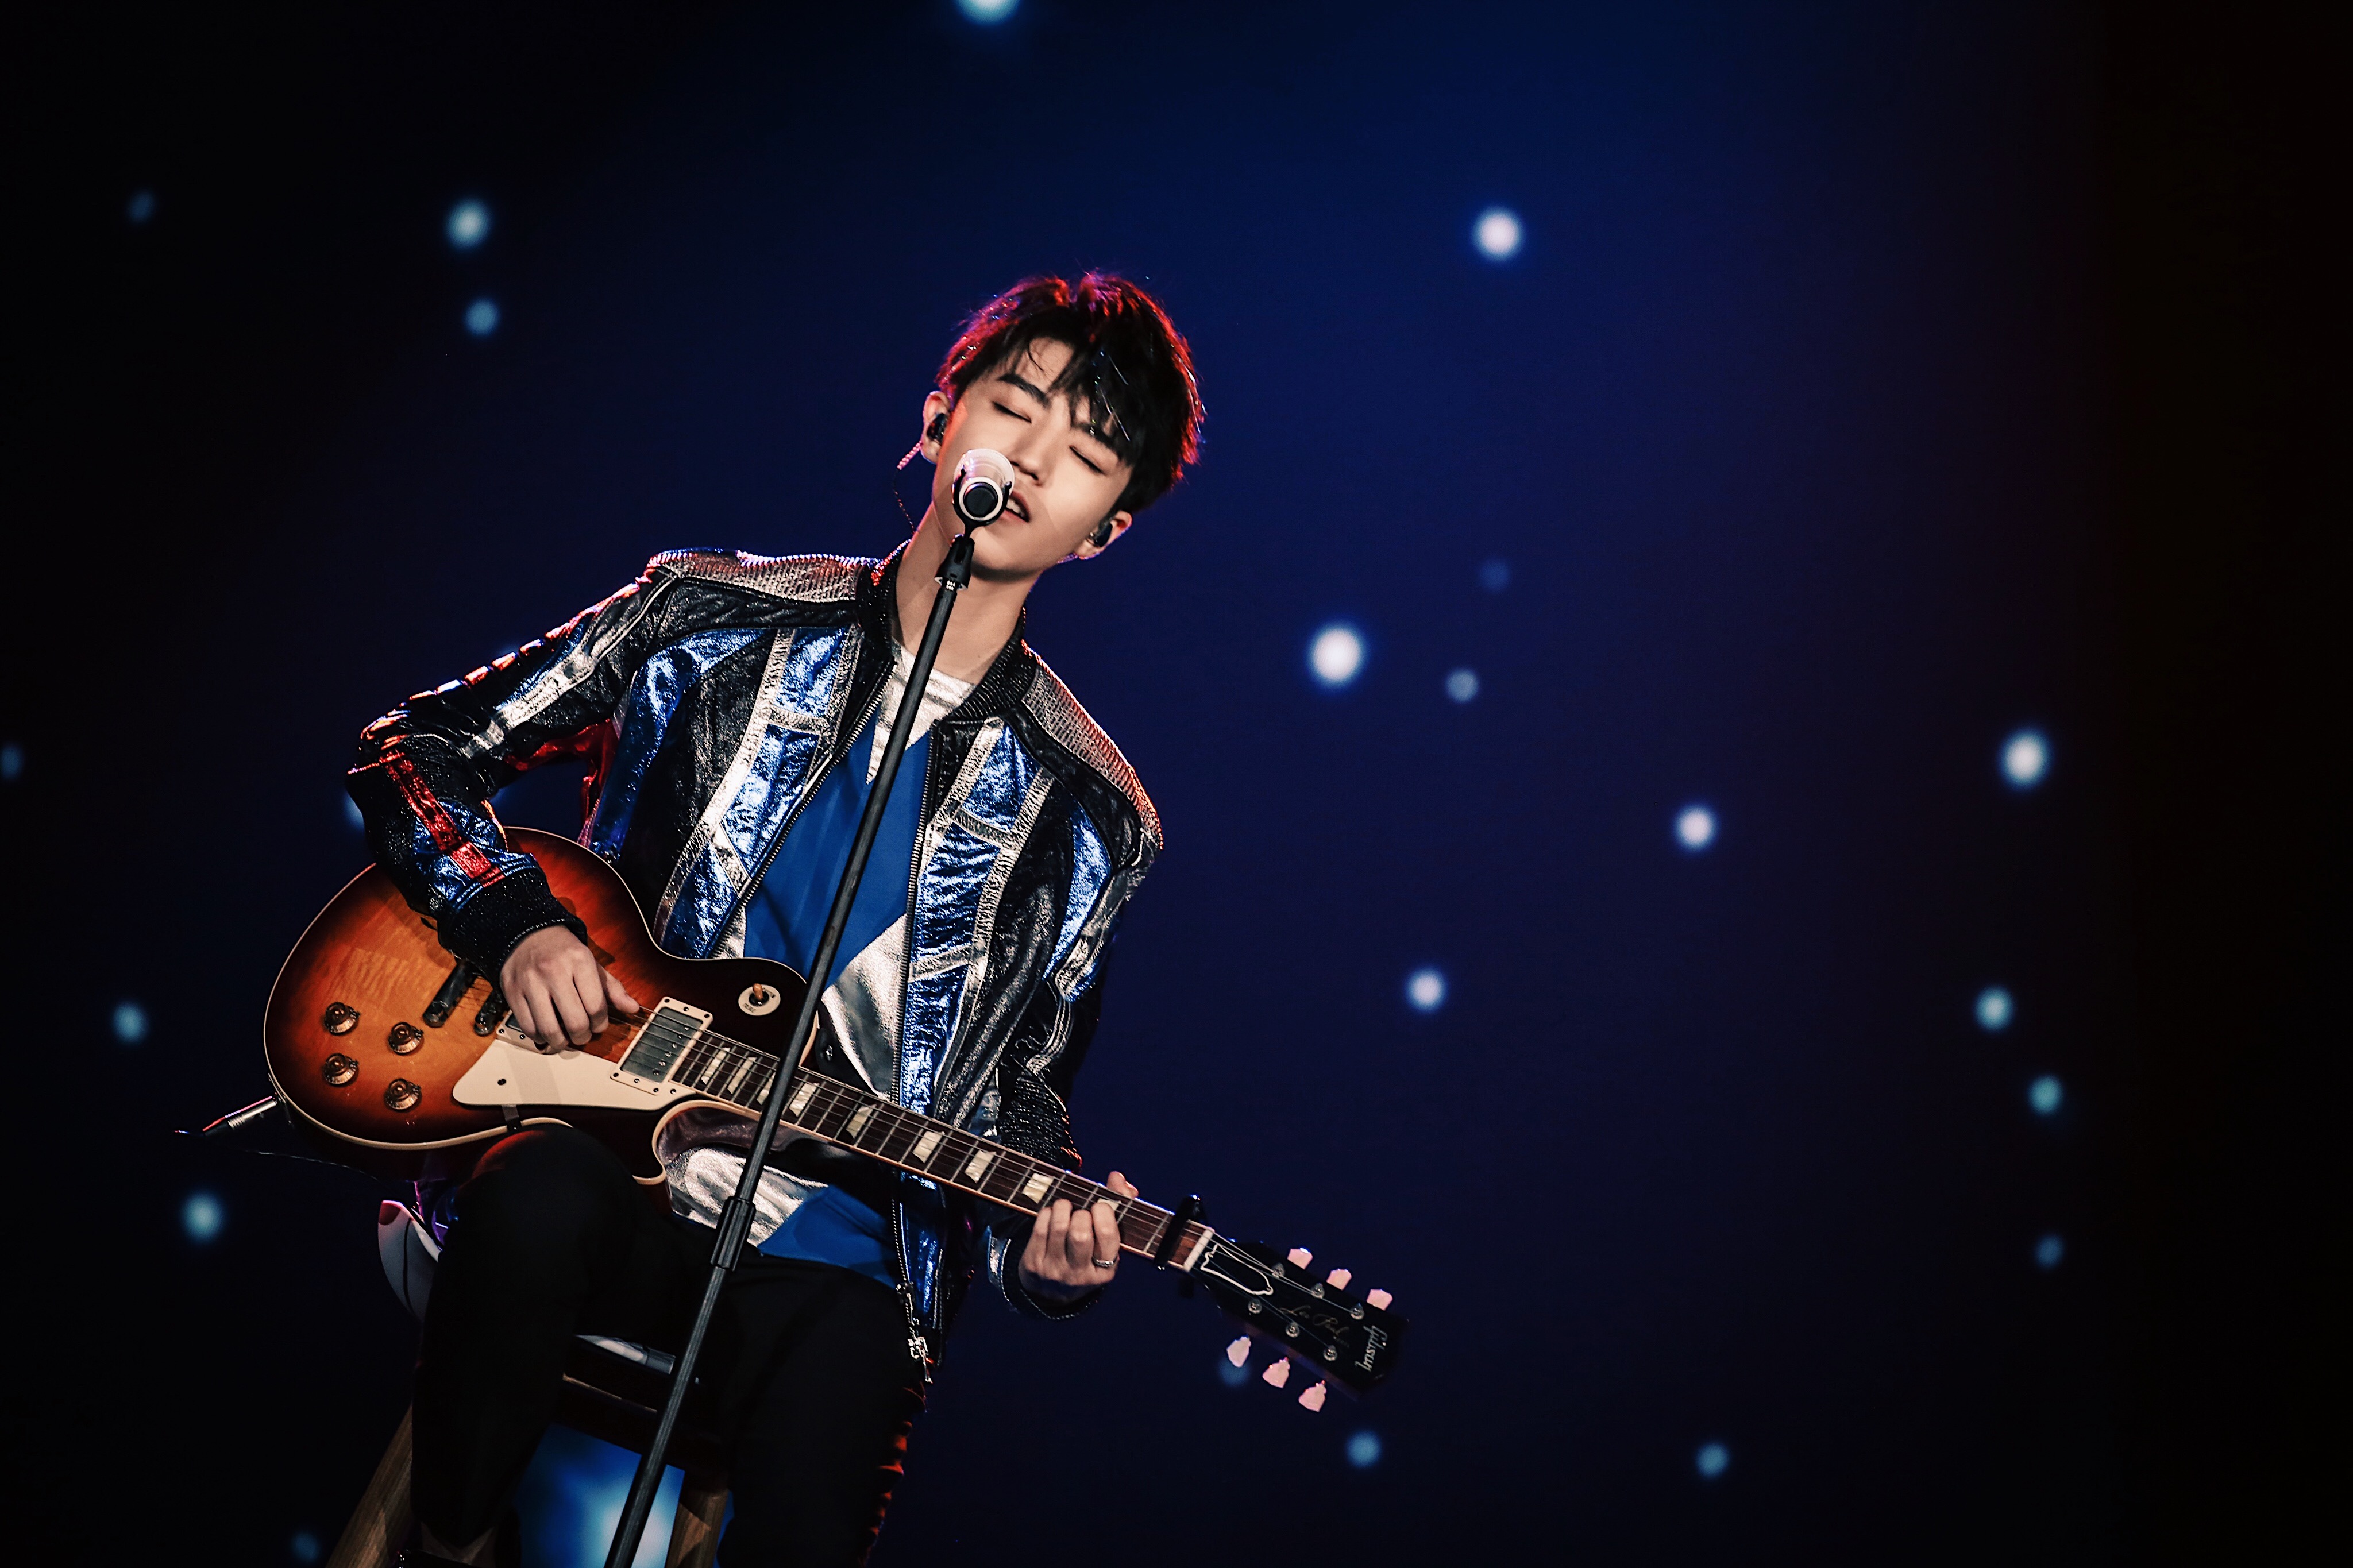 王俊凯这套是摇滚少年,满天星光下安静弹吉他的样子太美好了